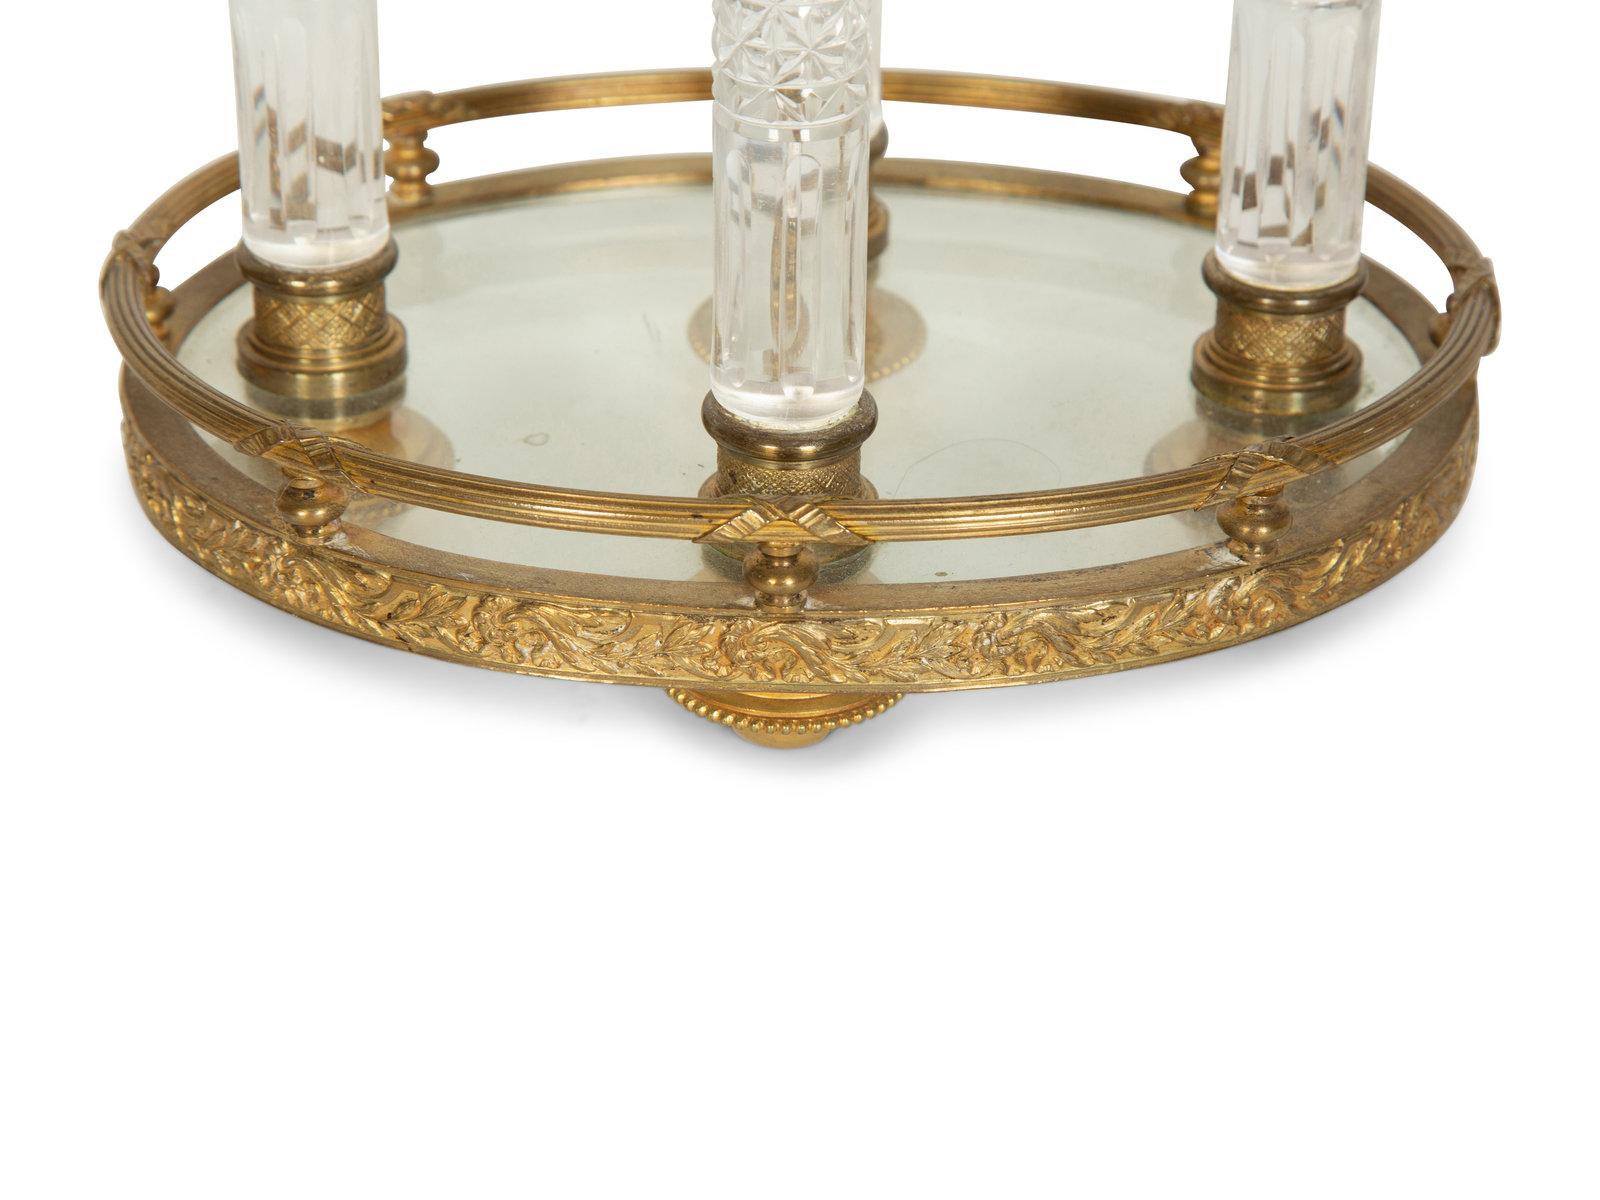 Un très beau centre de table en bronze doré avec des colonnes en cristal taillé à la main (4). Base et dessus supportant un conteneur ovale. France, datant d'environ 1900. 
Dimensions : Hauteur 10 1/2